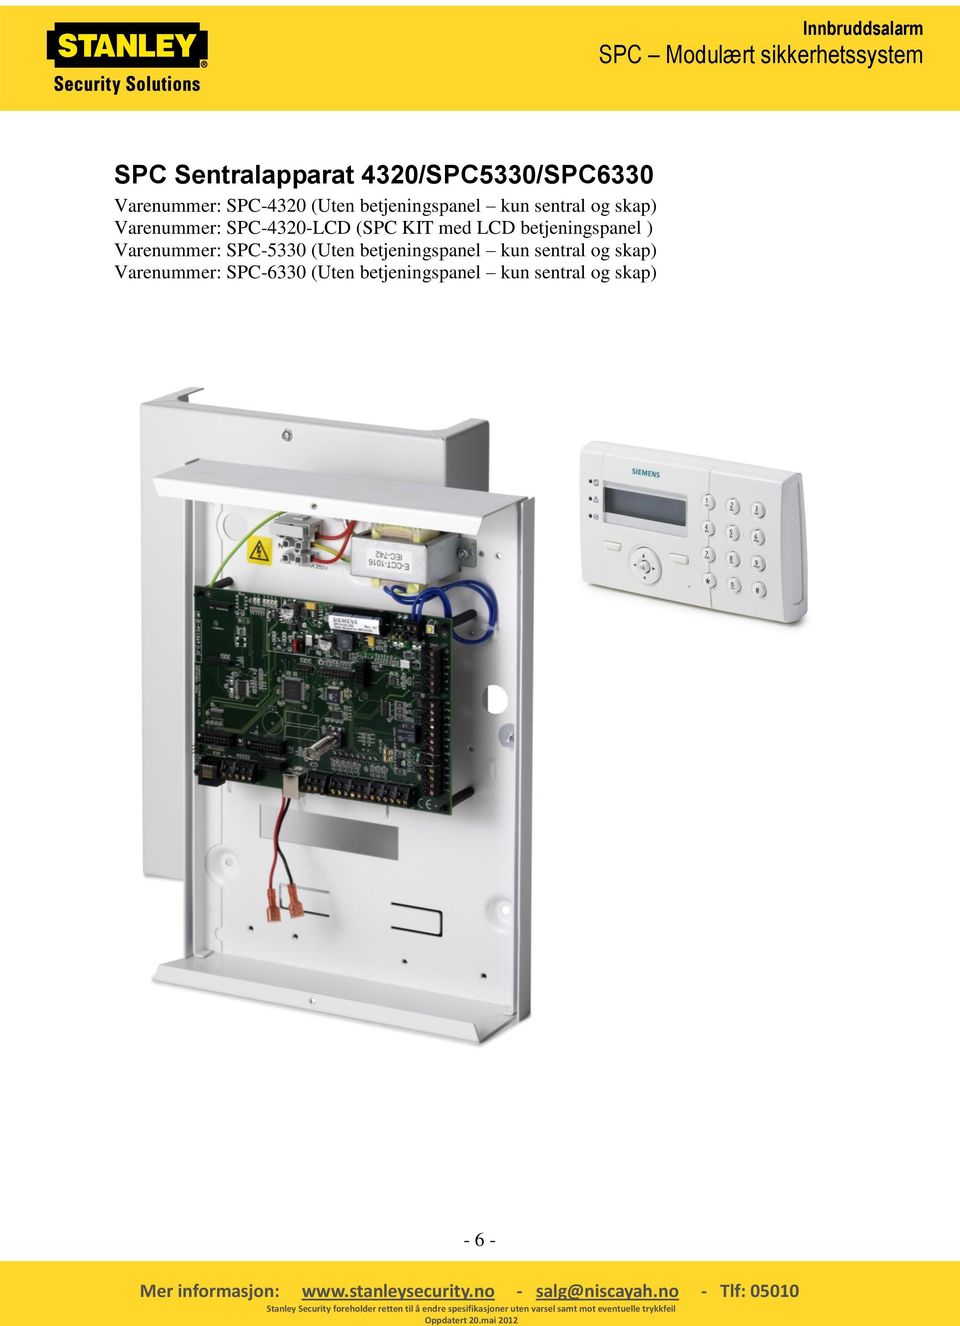 LCD betjeningspanel ) Varenummer: SPC-5330 (Uten betjeningspanel kun